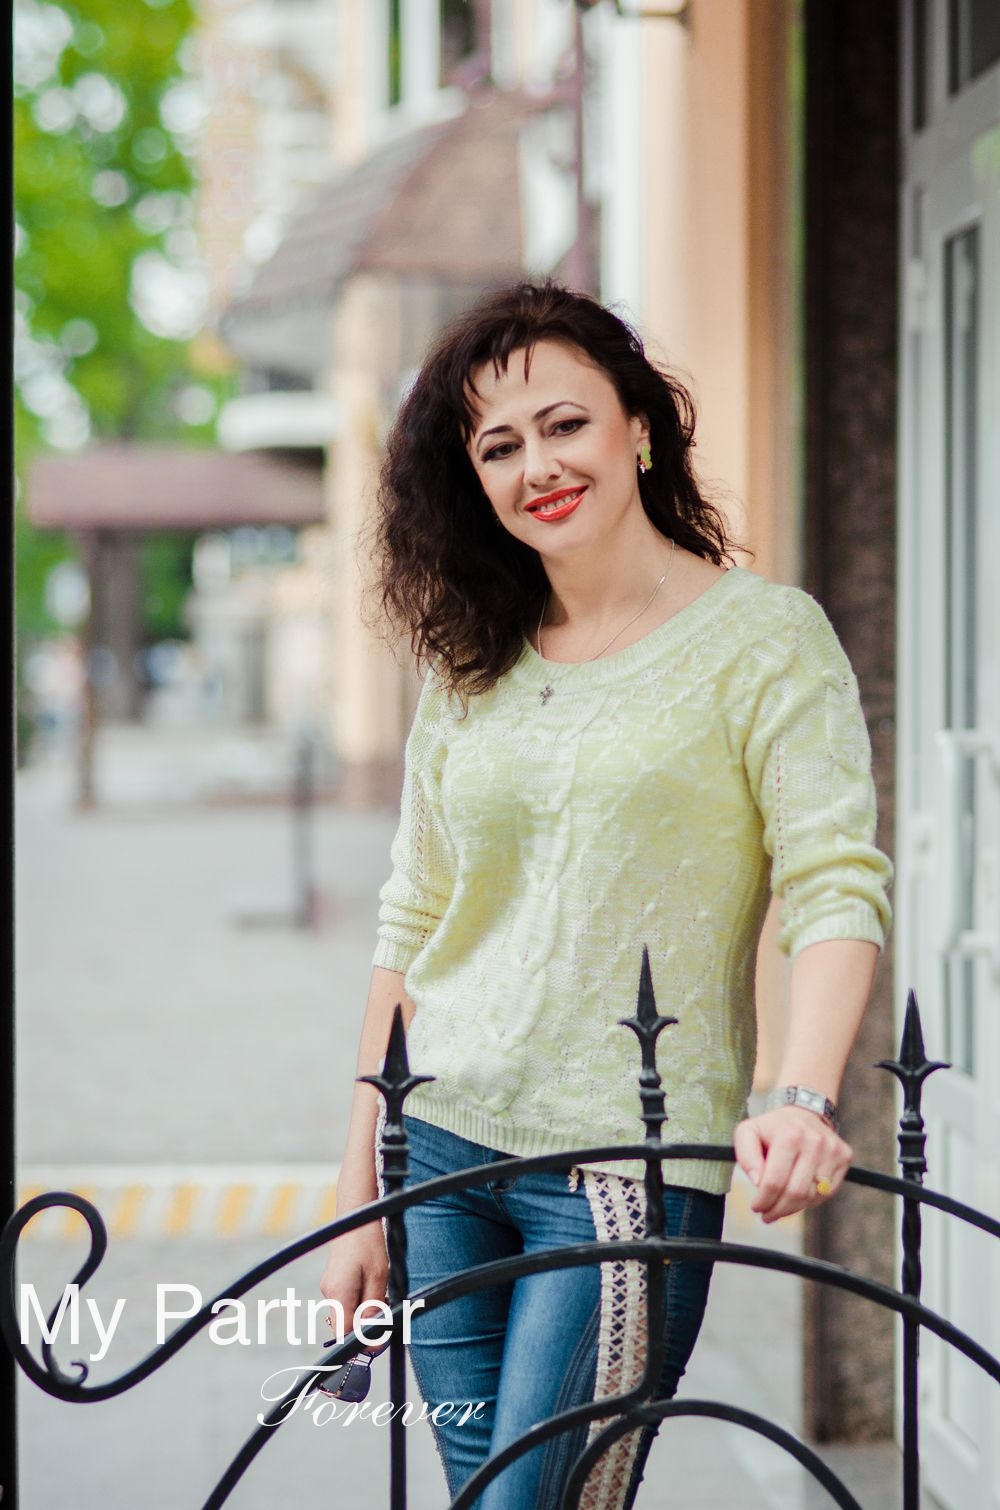 Dating Site to Meet Stunning Ukrainian Woman Vita from Poltava, Ukraine